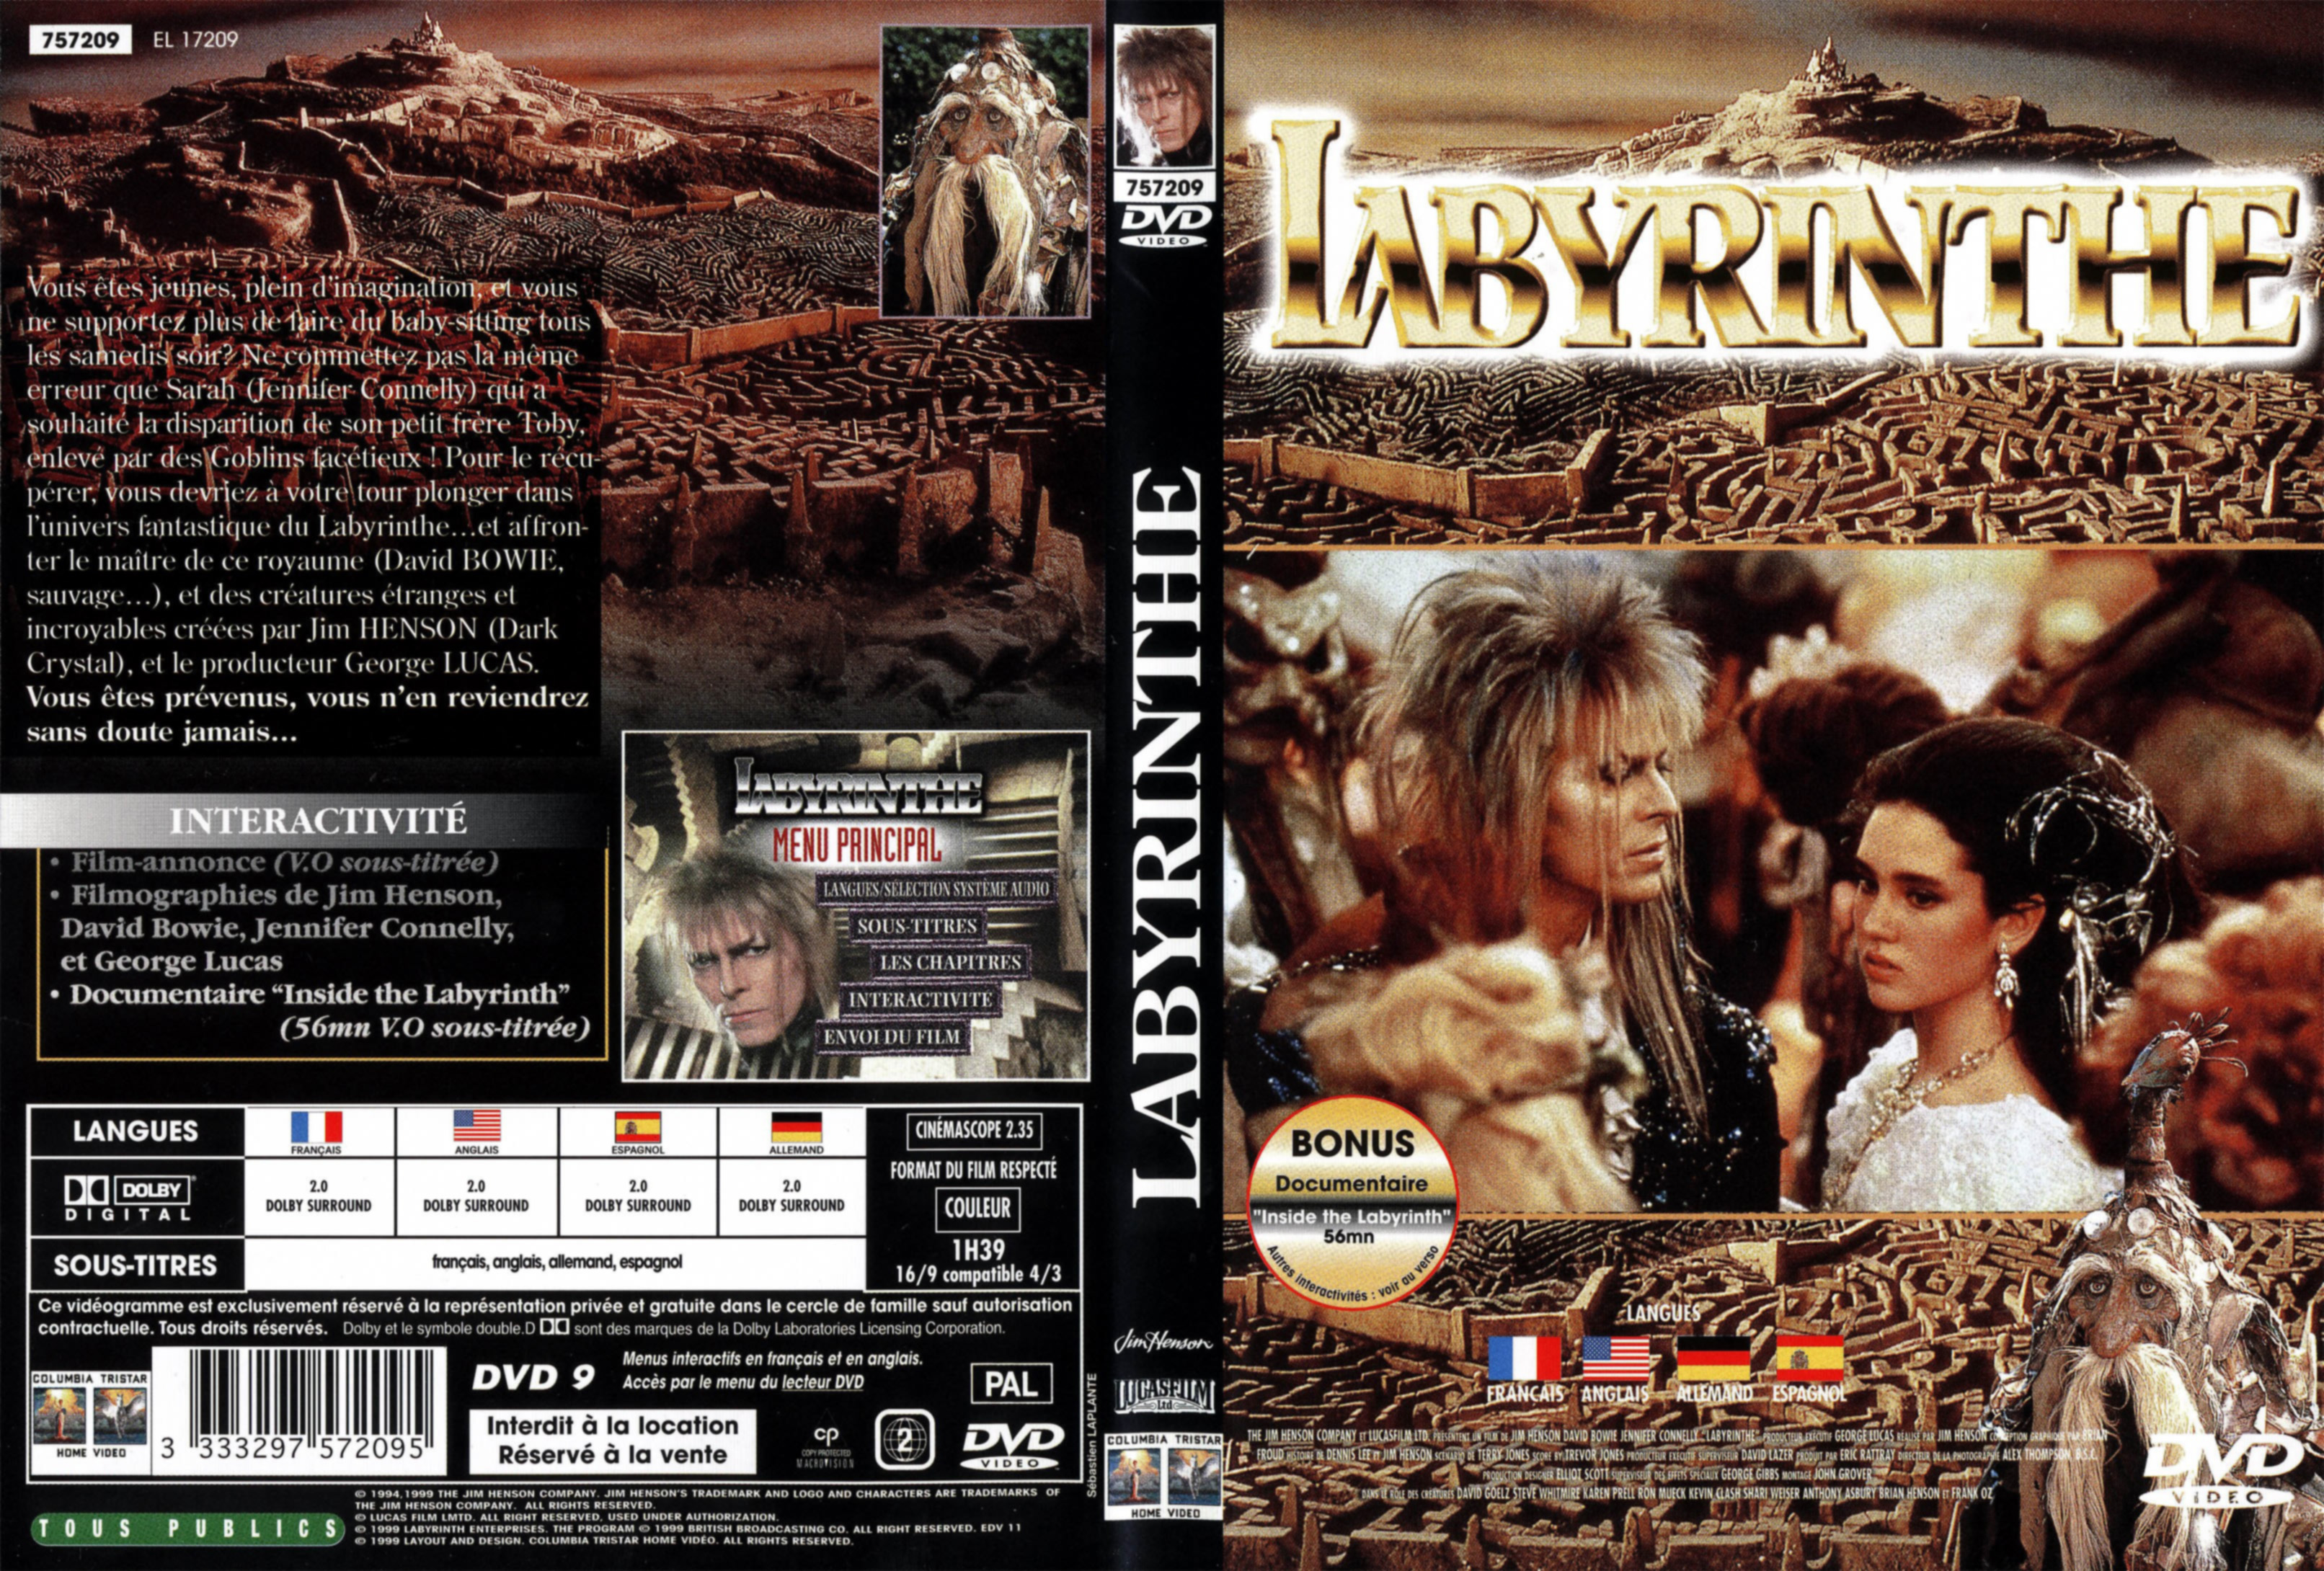 Jaquette DVD Labyrinthe v3